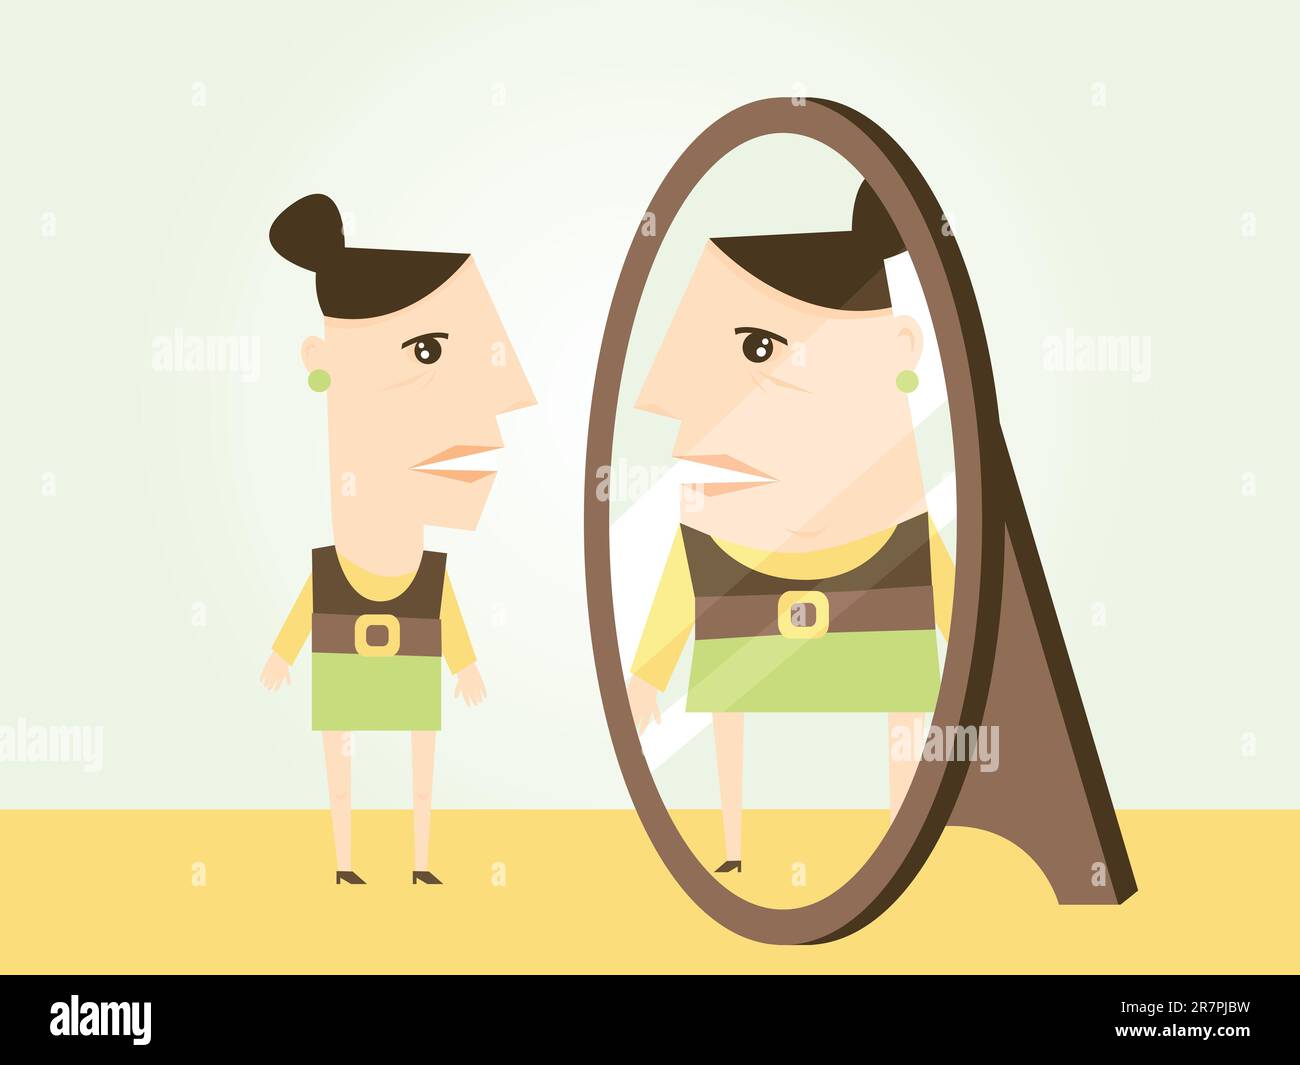 Eine dünne Frau sieht ihr Spiegelbild anders als es ist. Dies könnte bei körperdysmorphen Störungen oder Anorexie angewendet werden. Stock Vektor